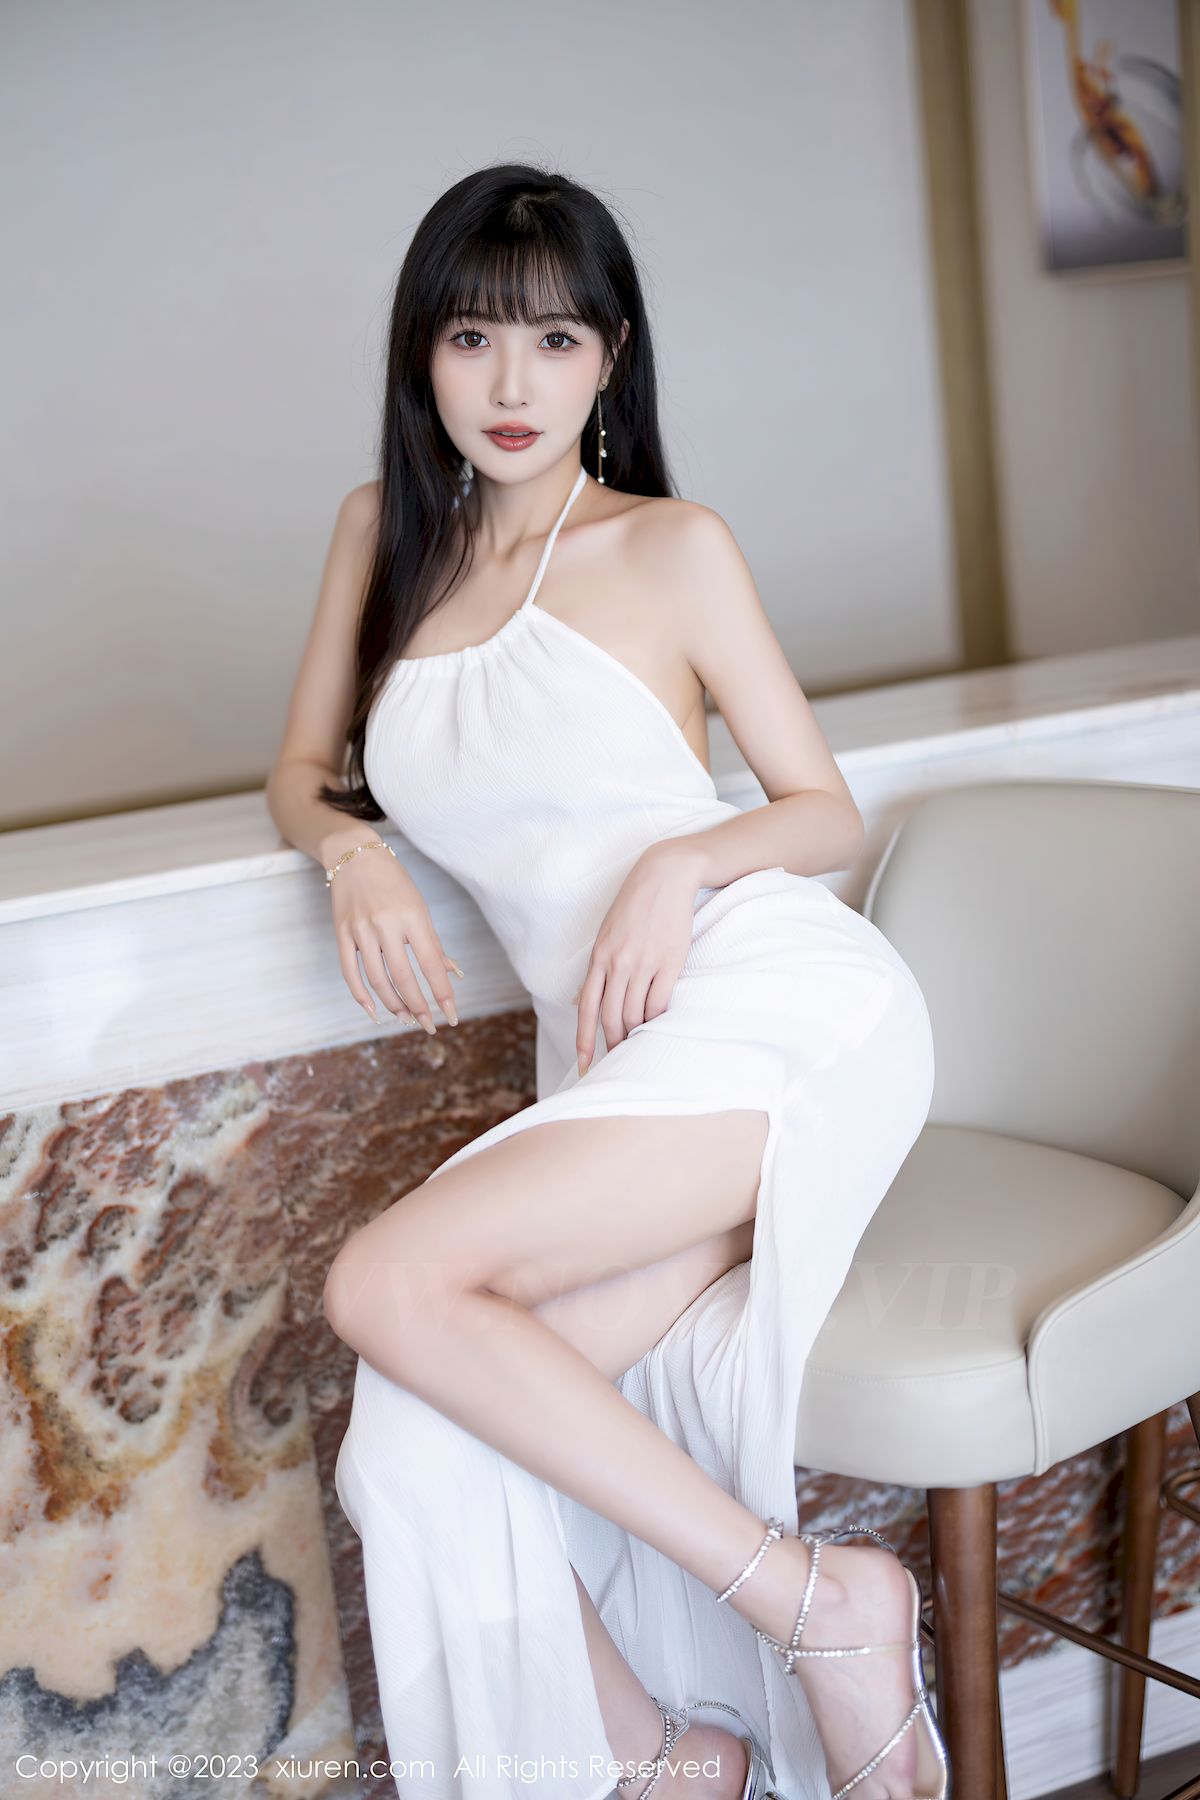 模特林星阑白色连衣长裙修长美腿性感写真